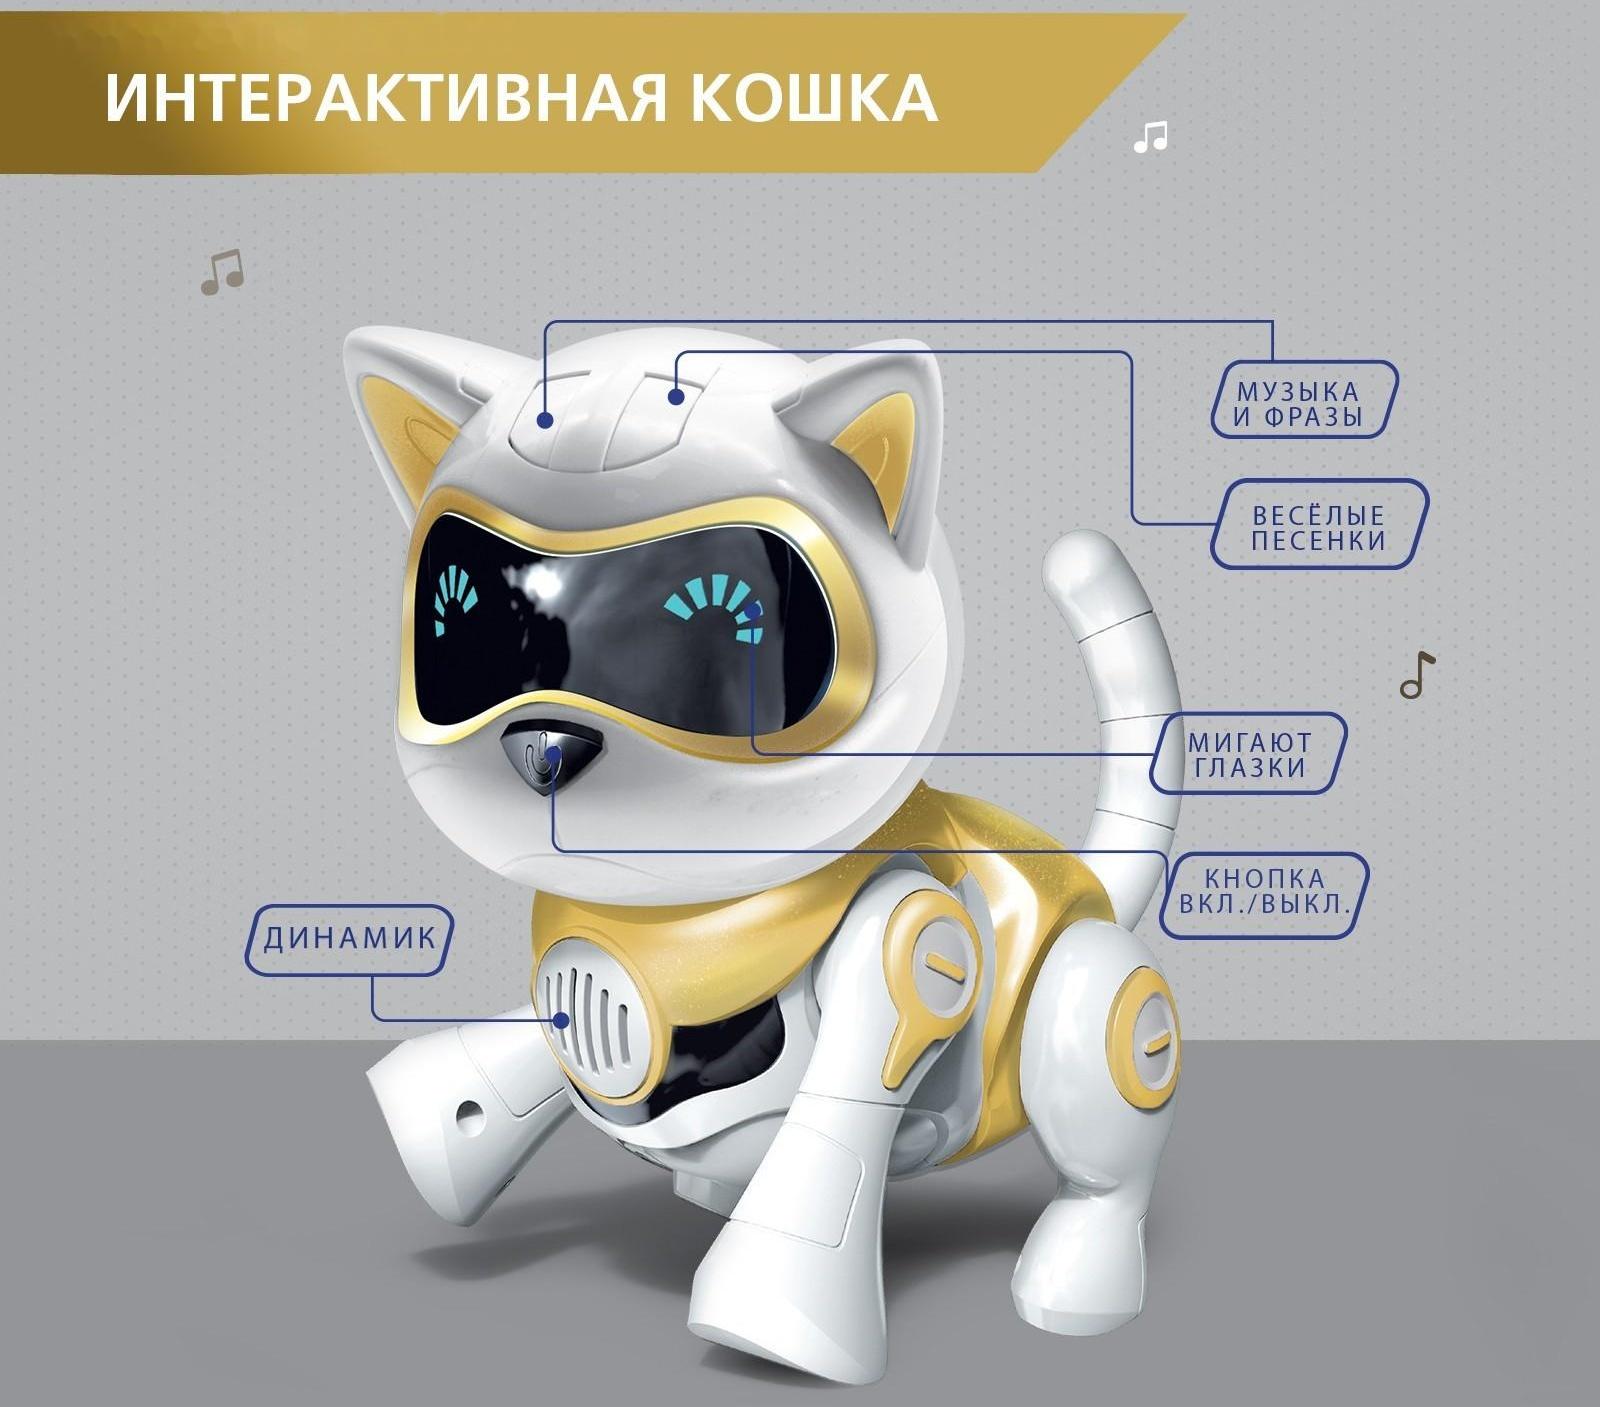 Робот-кошка интерактивная «Шерри», русское озвучивание,свет, звук / Золотой